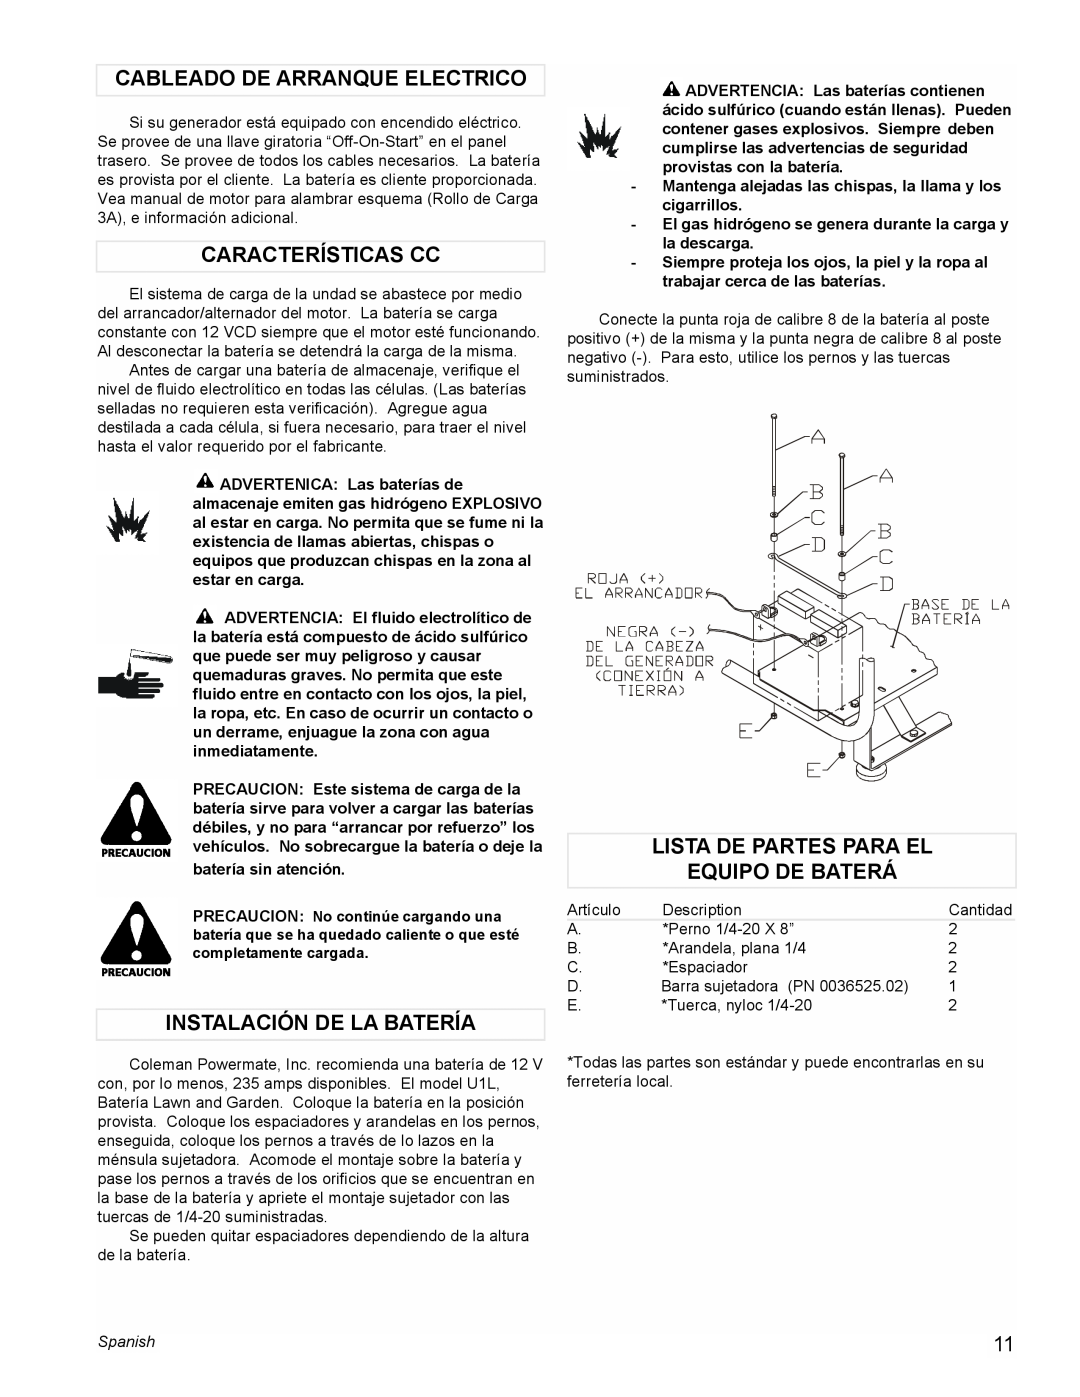 Coleman PM0601100 manual Cableado De Arranque Electrico, Características Cc, Instalación De La Batería, Spanish 